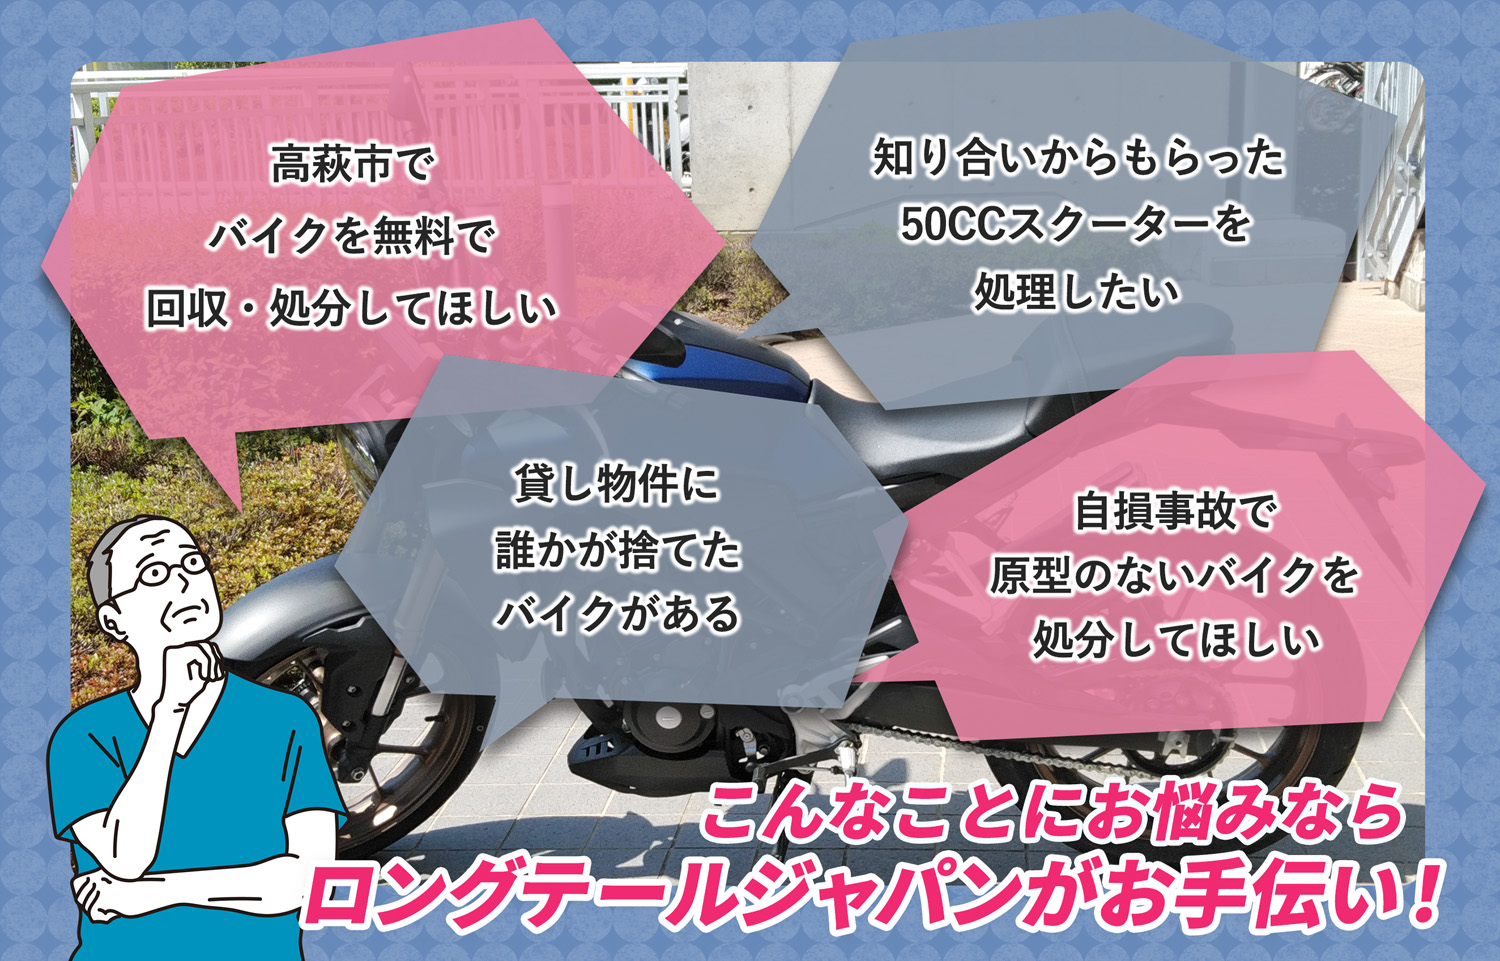 高萩市でこんなバイクの処分にお困りでしたらバイク無料回収処分隊がお手伝いいたします。